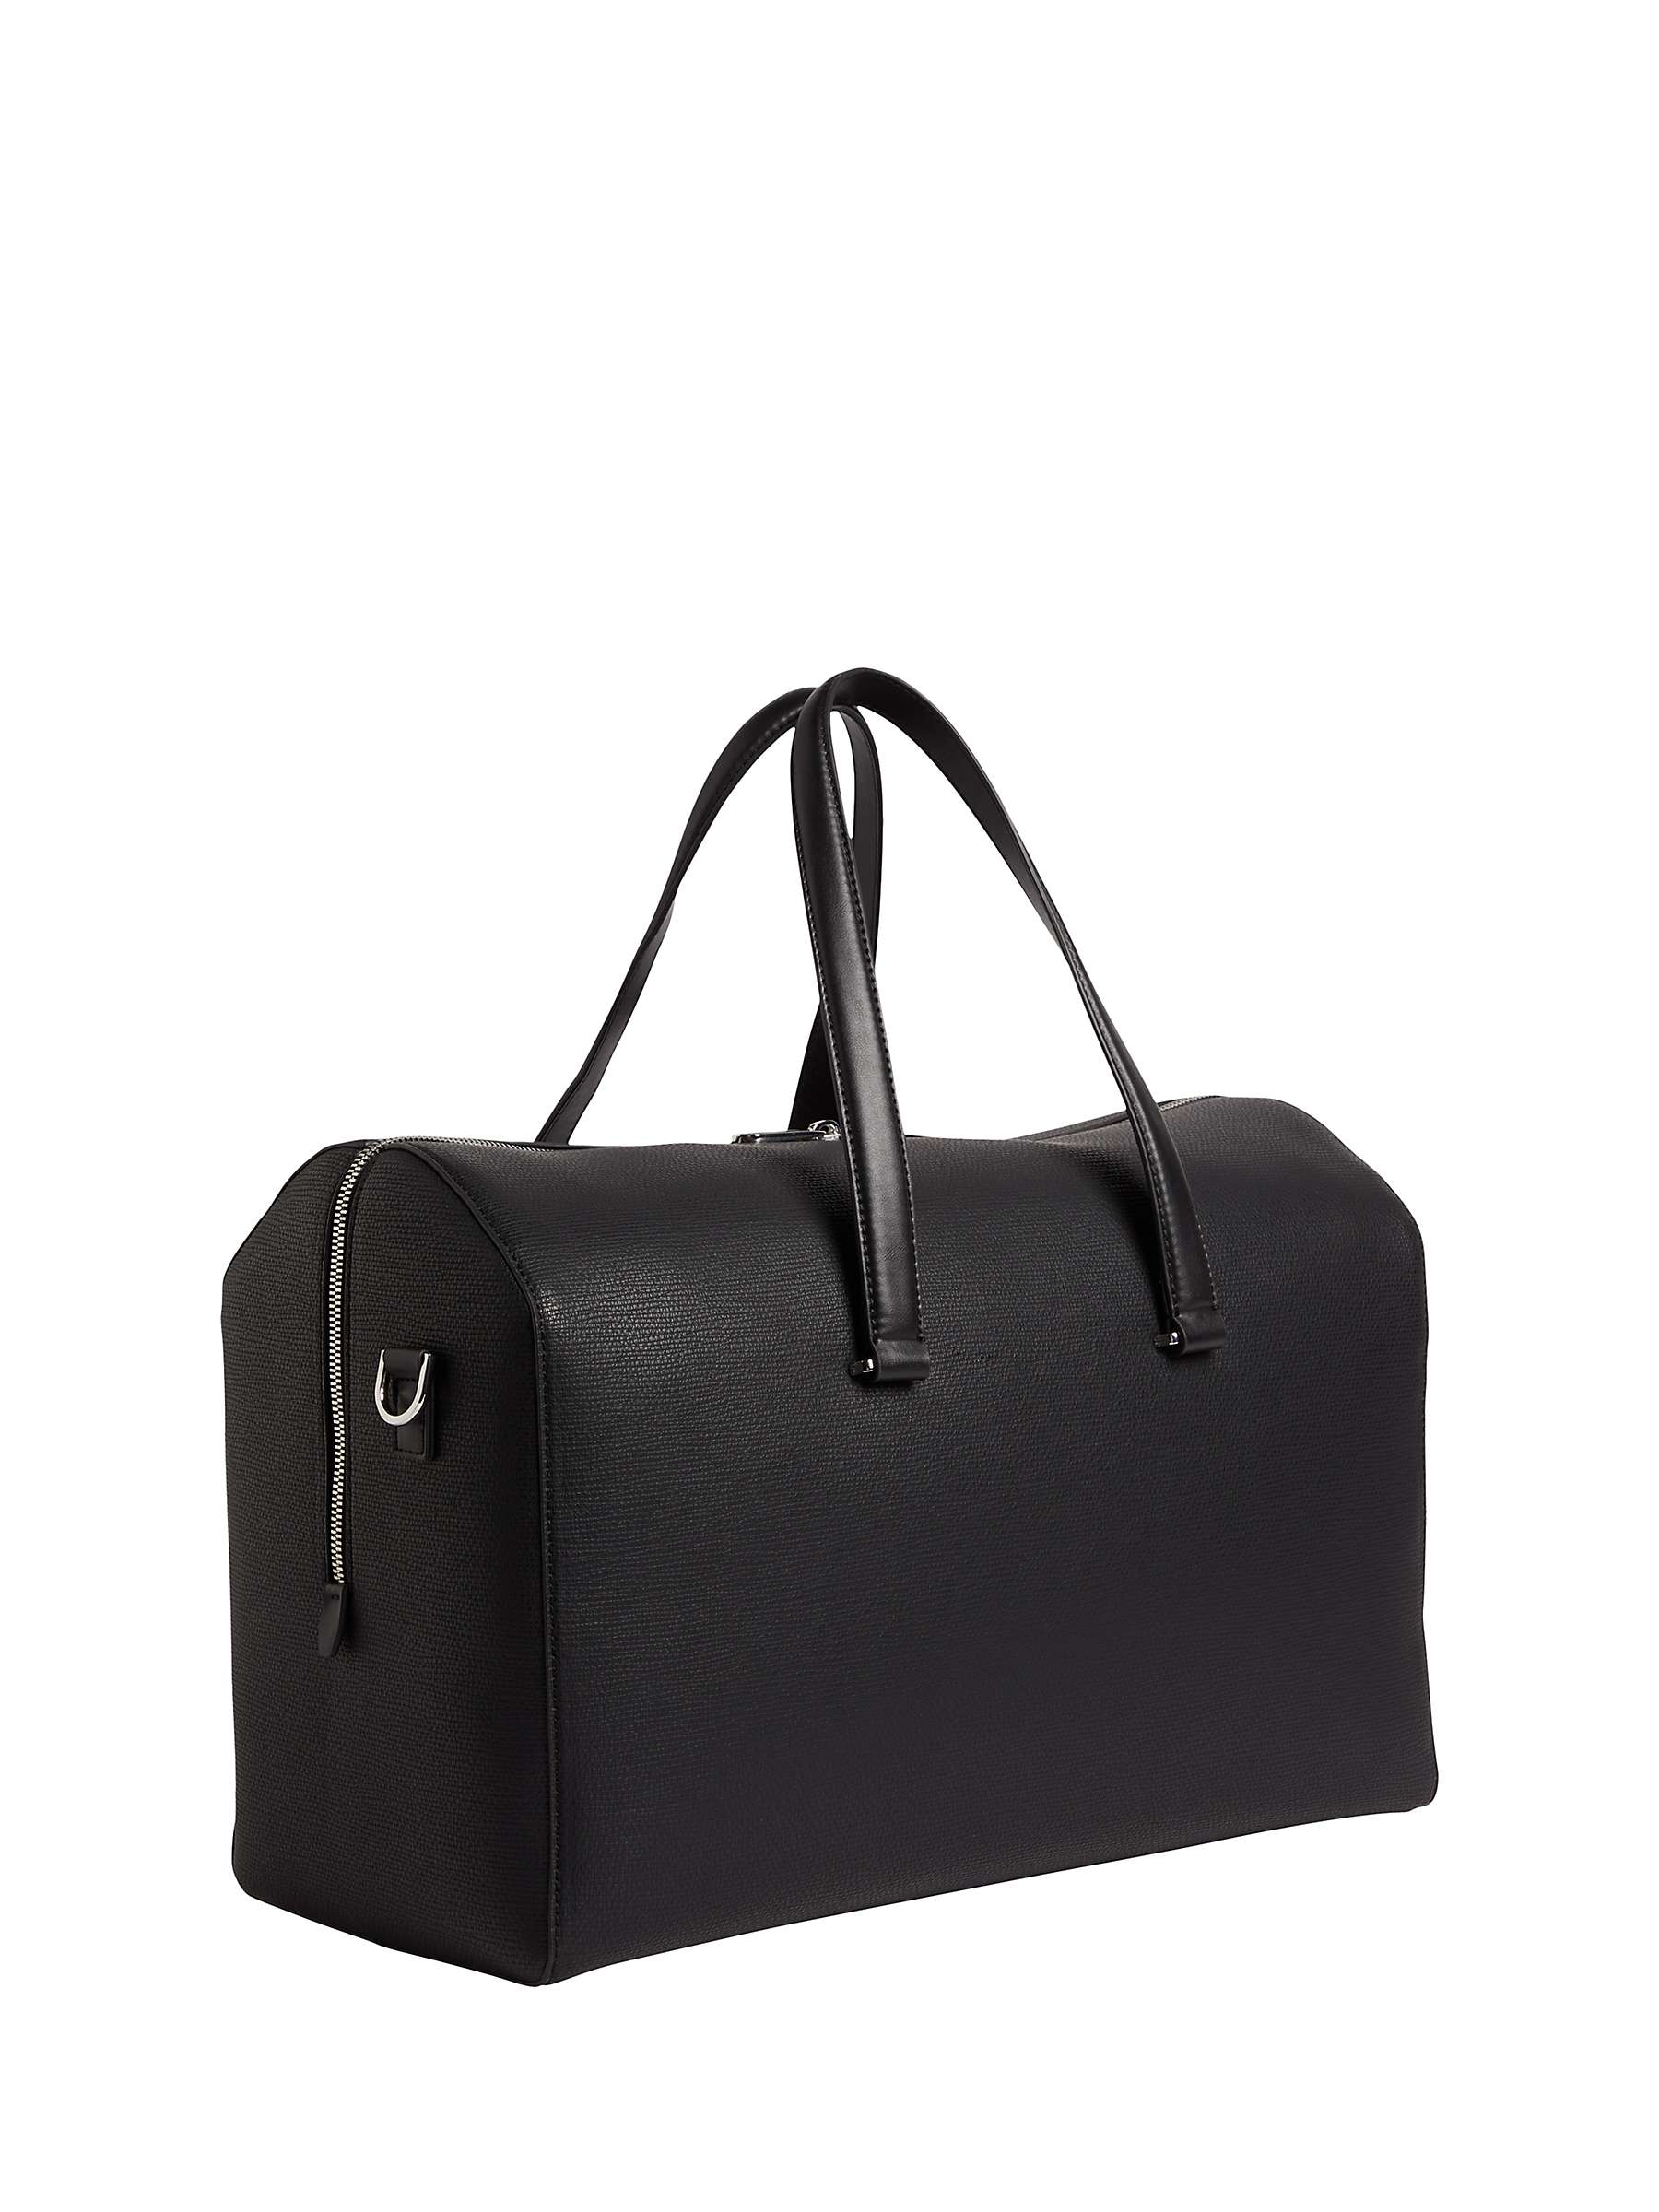 Calvin Klein Weekender Holdall Bag, Black at John Lewis & Partners